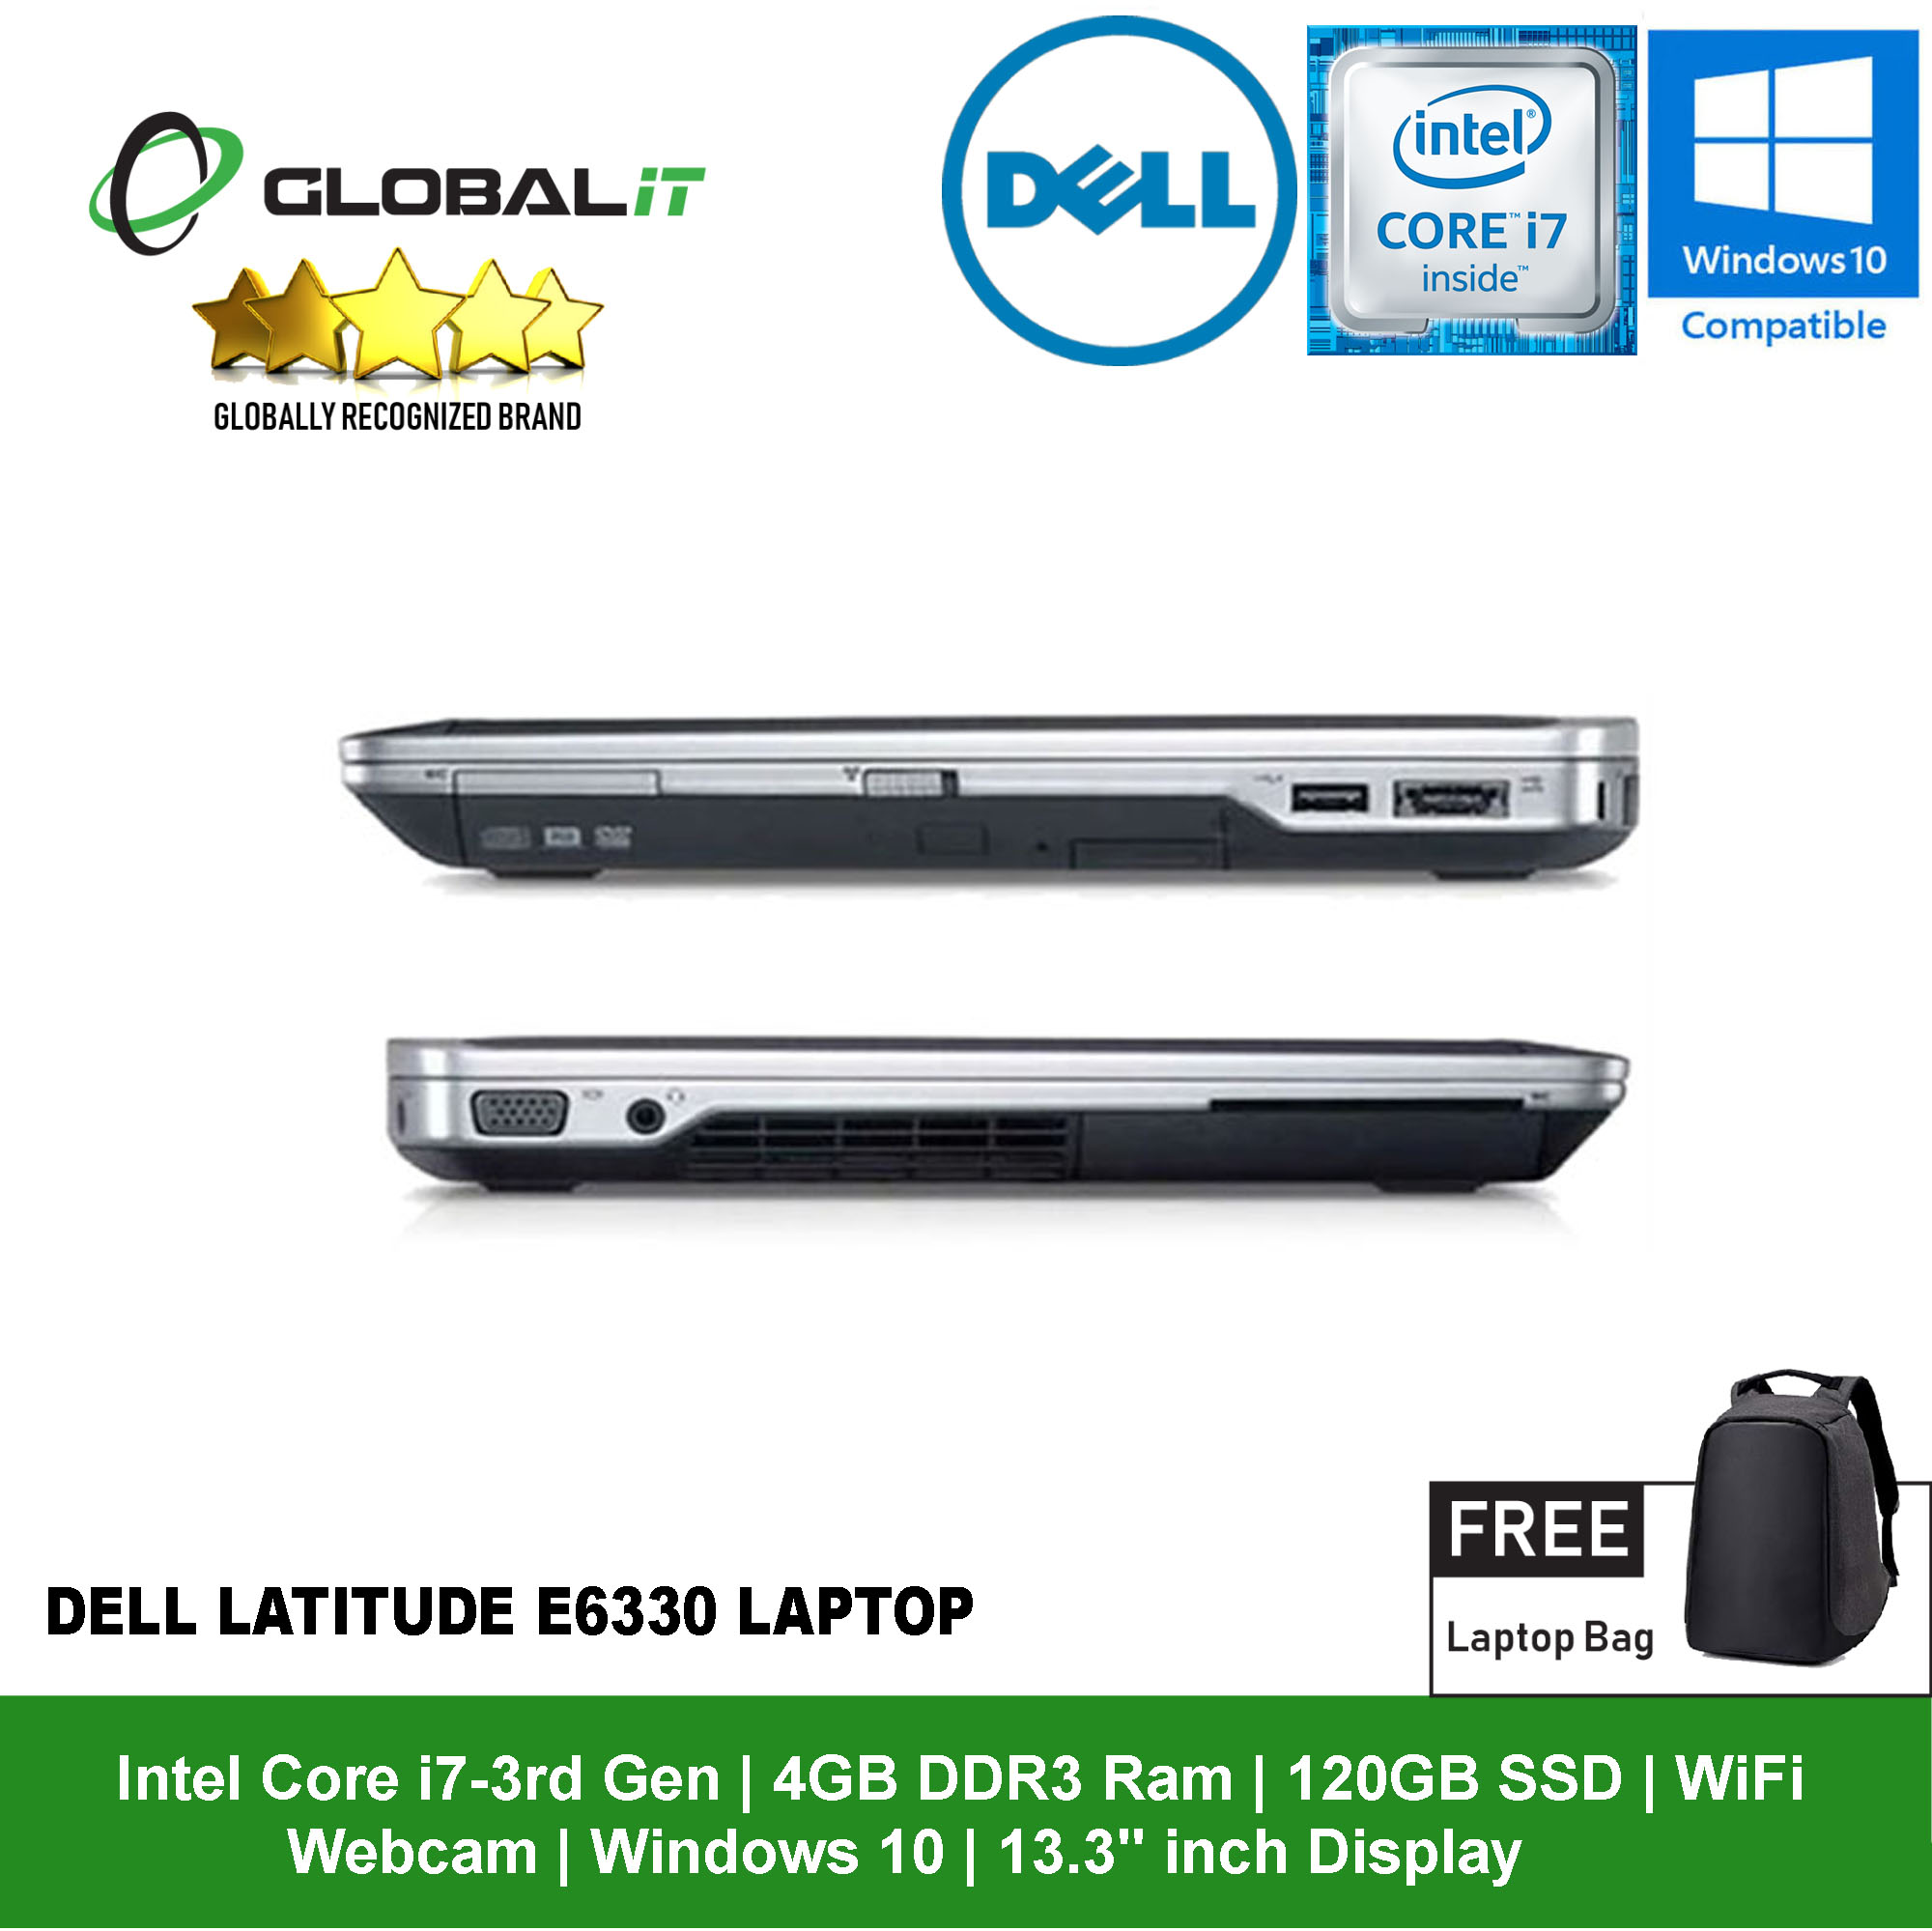 Dell Latitude E6330 Laptop Intel Core i7-3rd Gen 